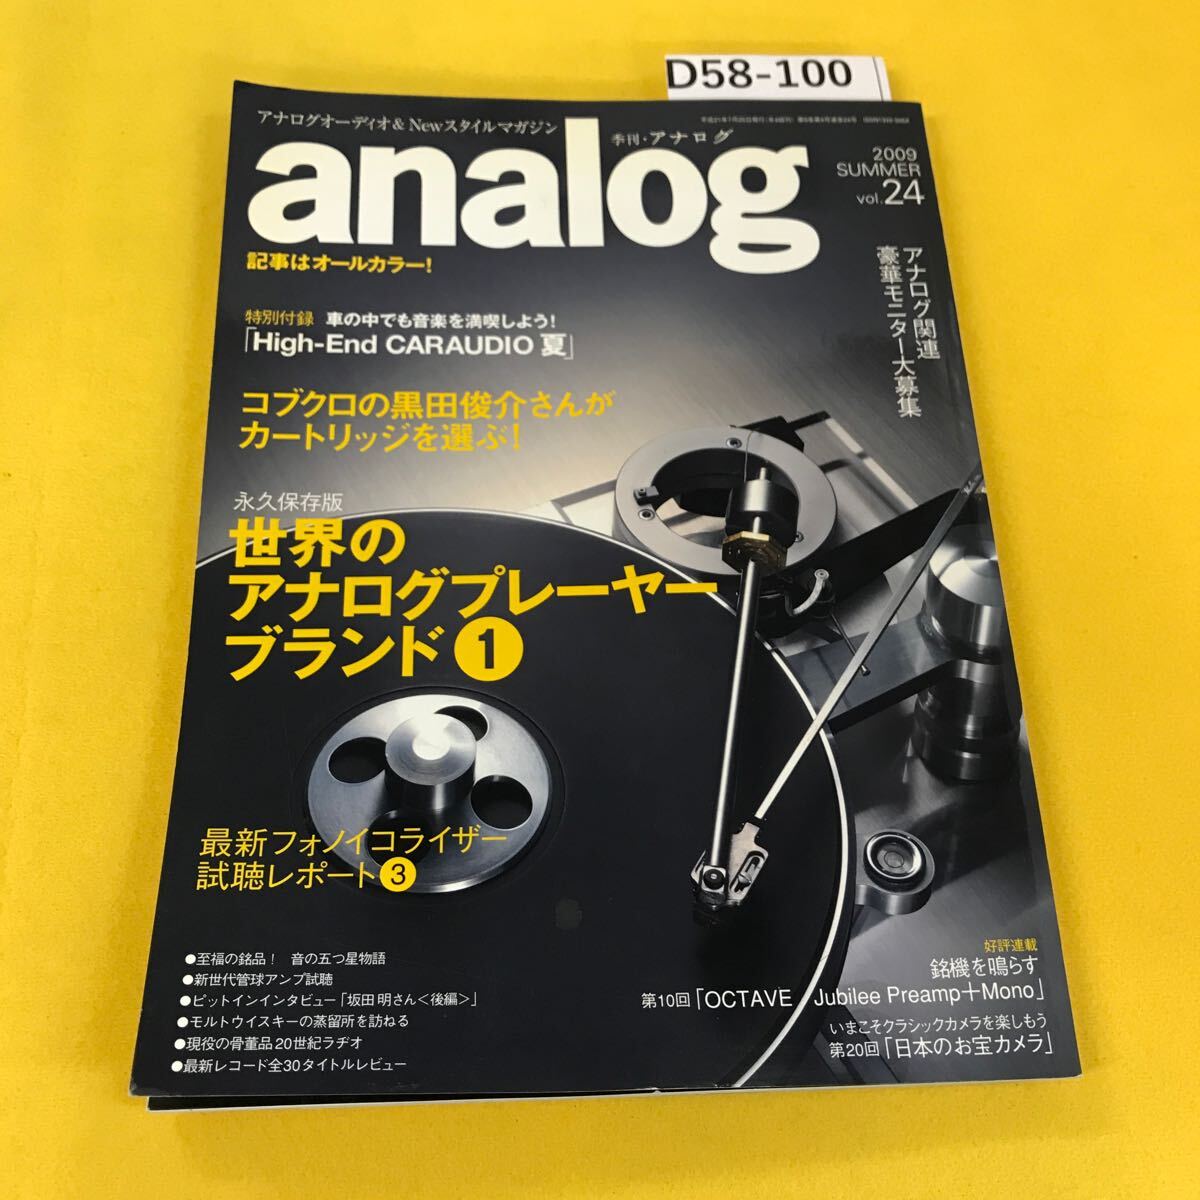 D58-100 analog 2009年夏vol.24 世界のアナログプレーヤーブランド他 _画像1